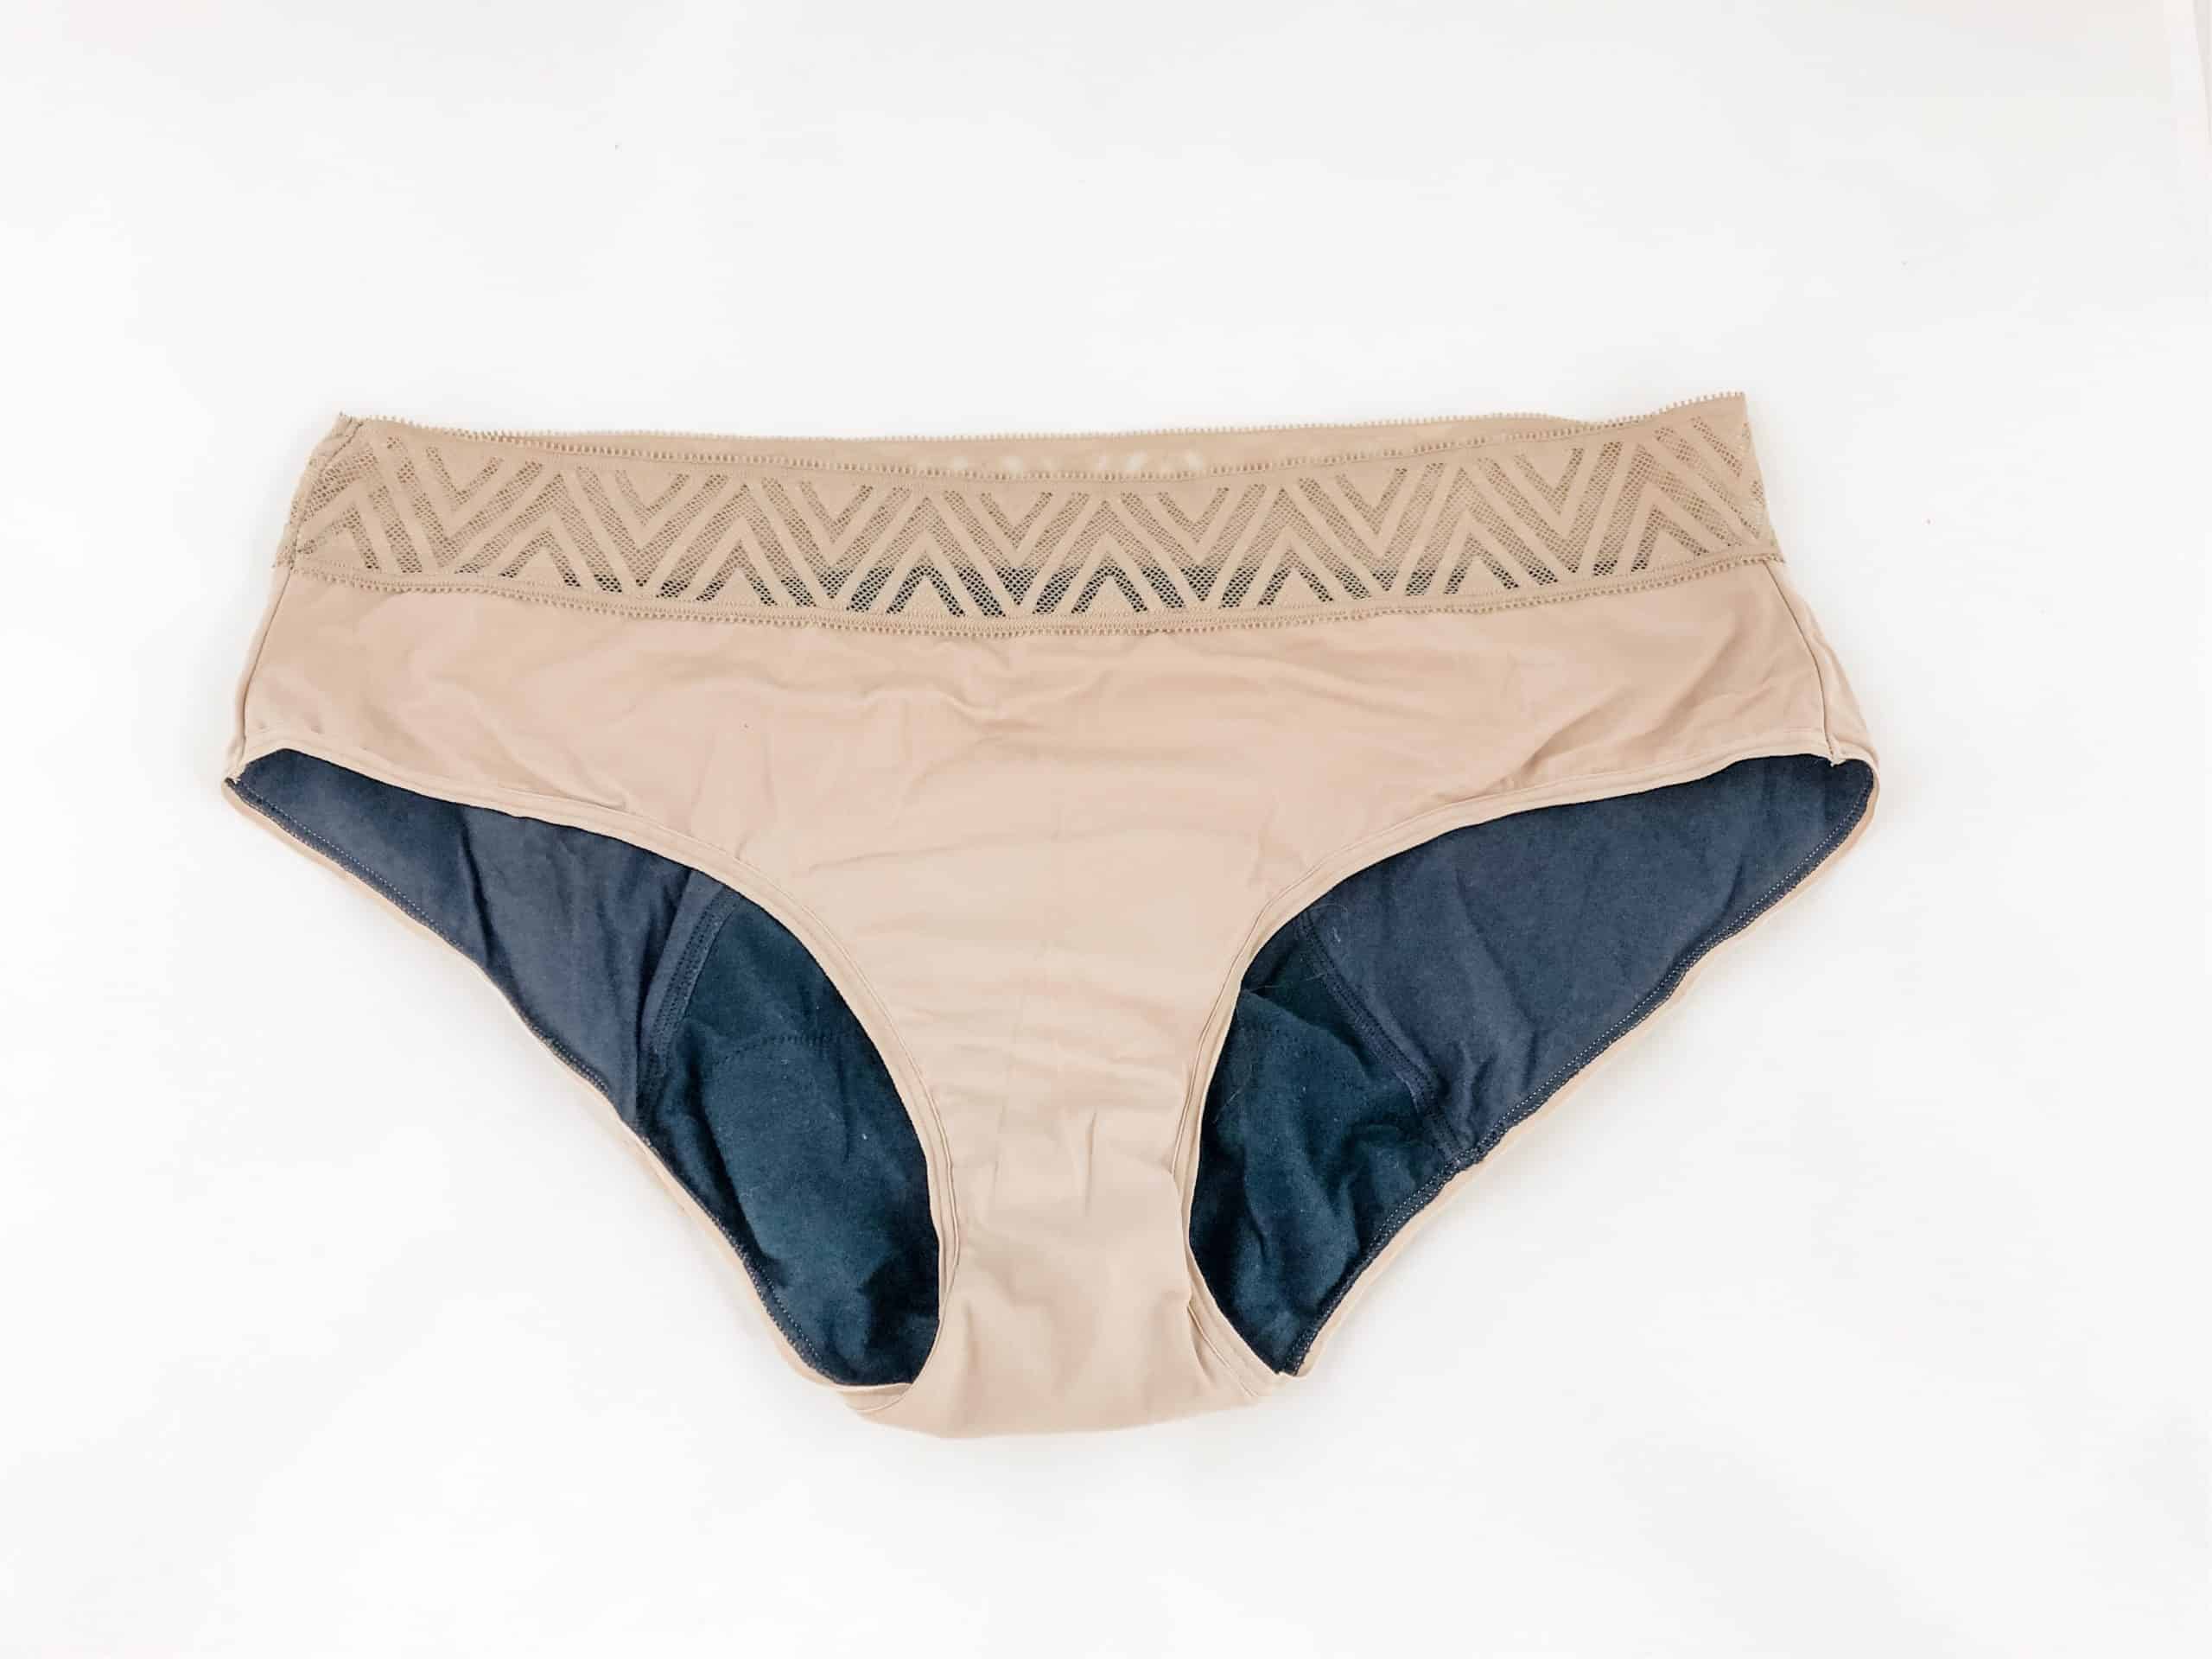 Non Toxic Alternatives To Thinx Period Underwear (Without PFAS)